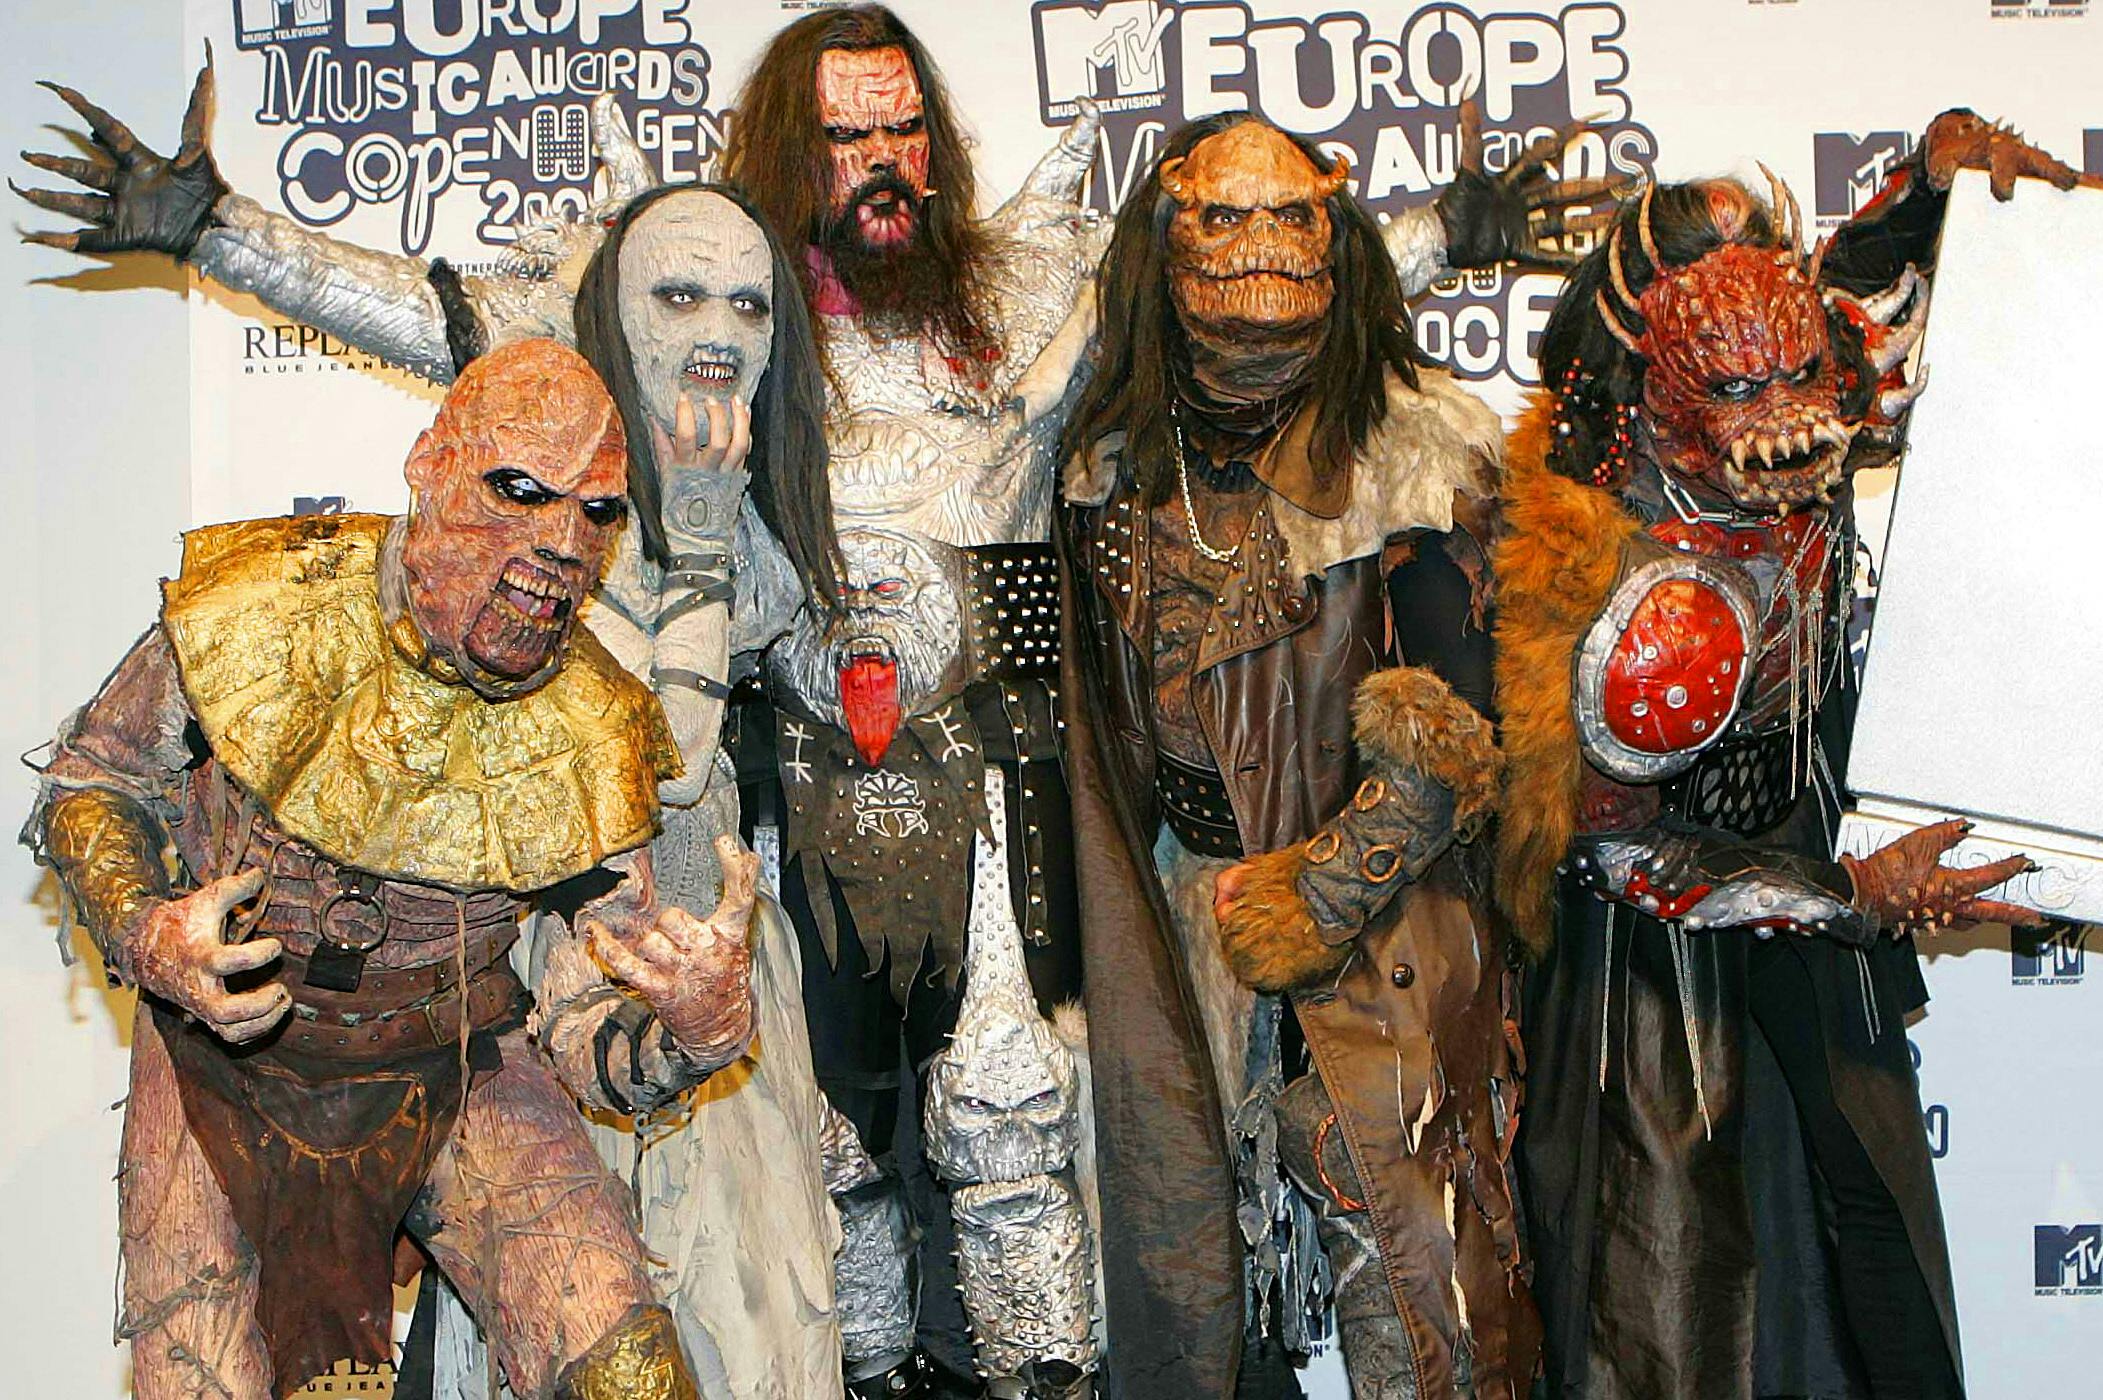 Den finske monstergruppe "Lordi", der løb med trofæet i 2006.
